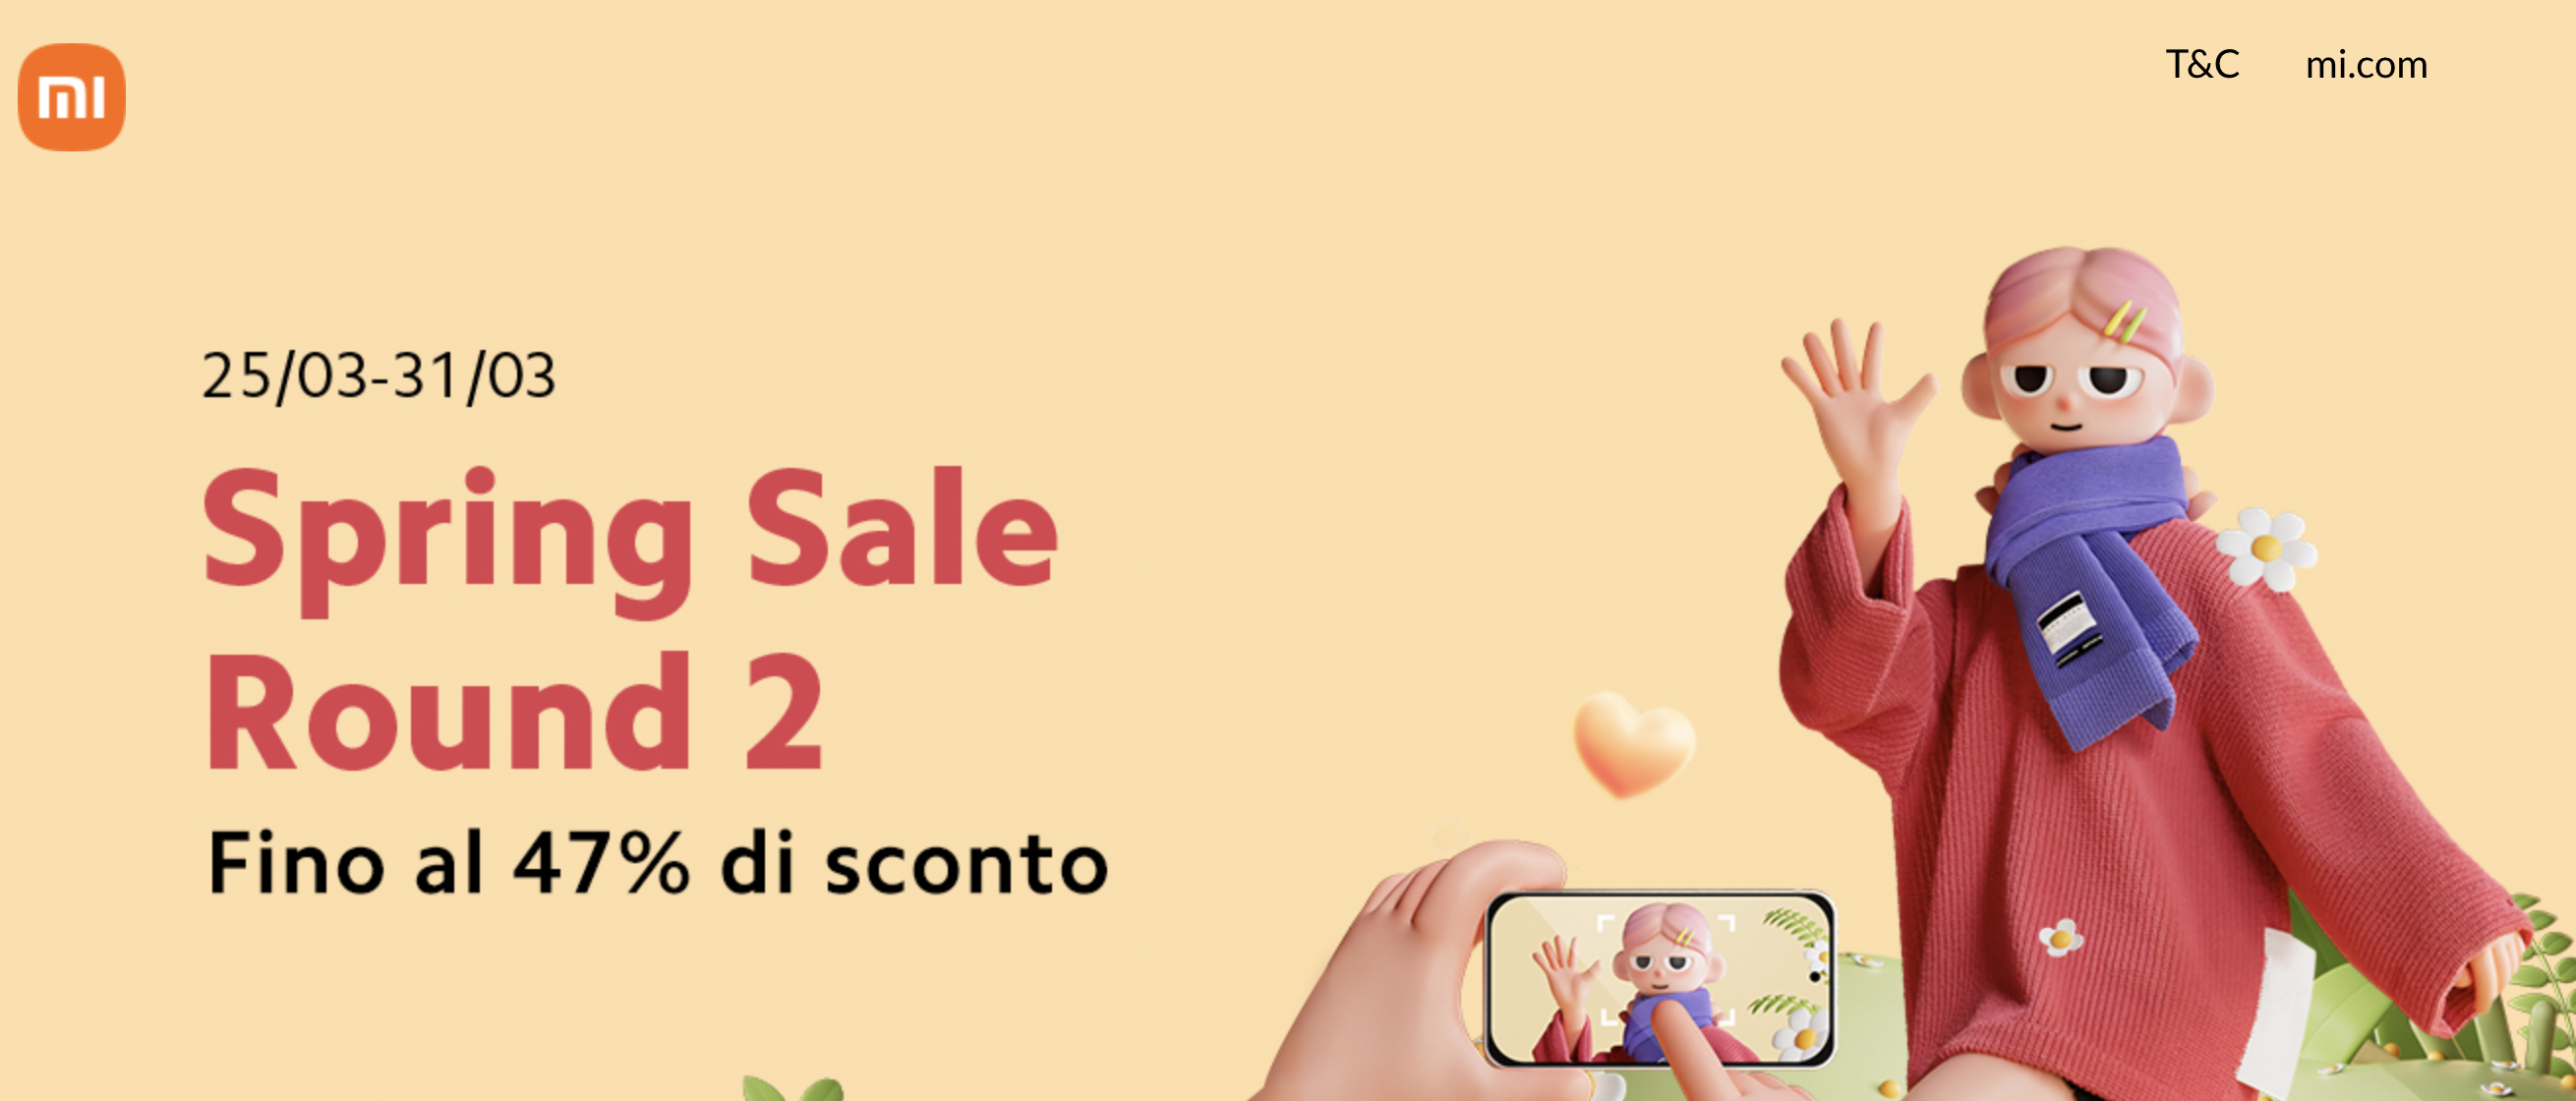 Offerte Xiaomi Spring Sale Round 2